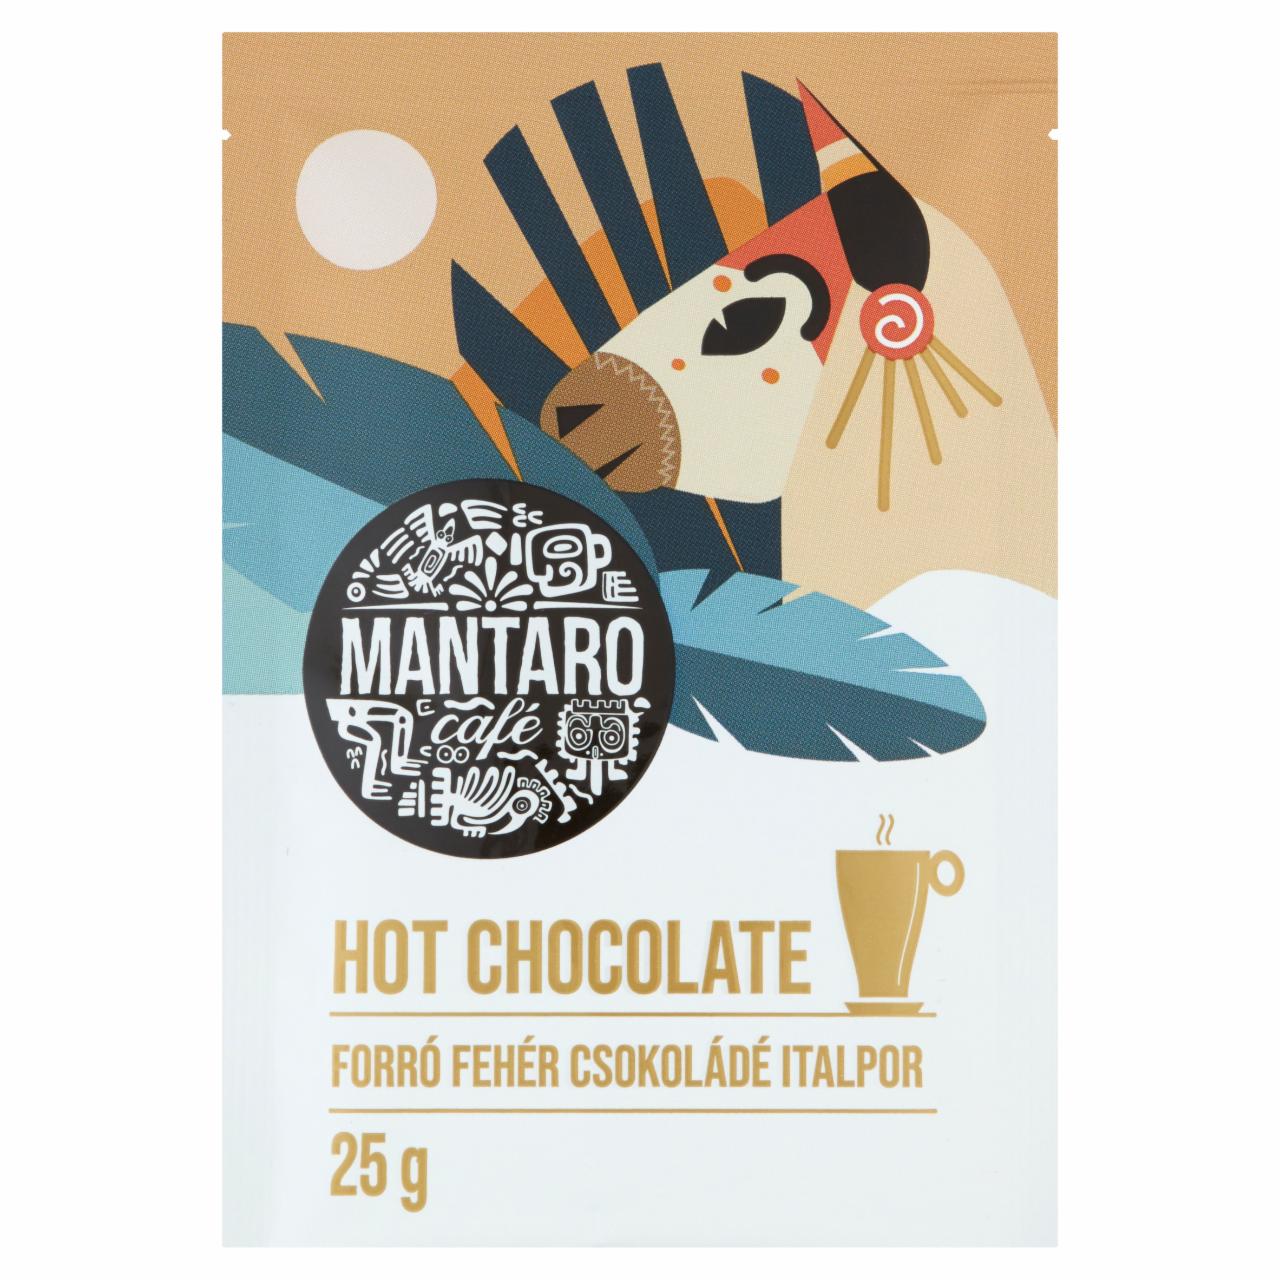 Képek - Mantaro Café Hot Chocolate forró fehér csokoládé italpor 25 g